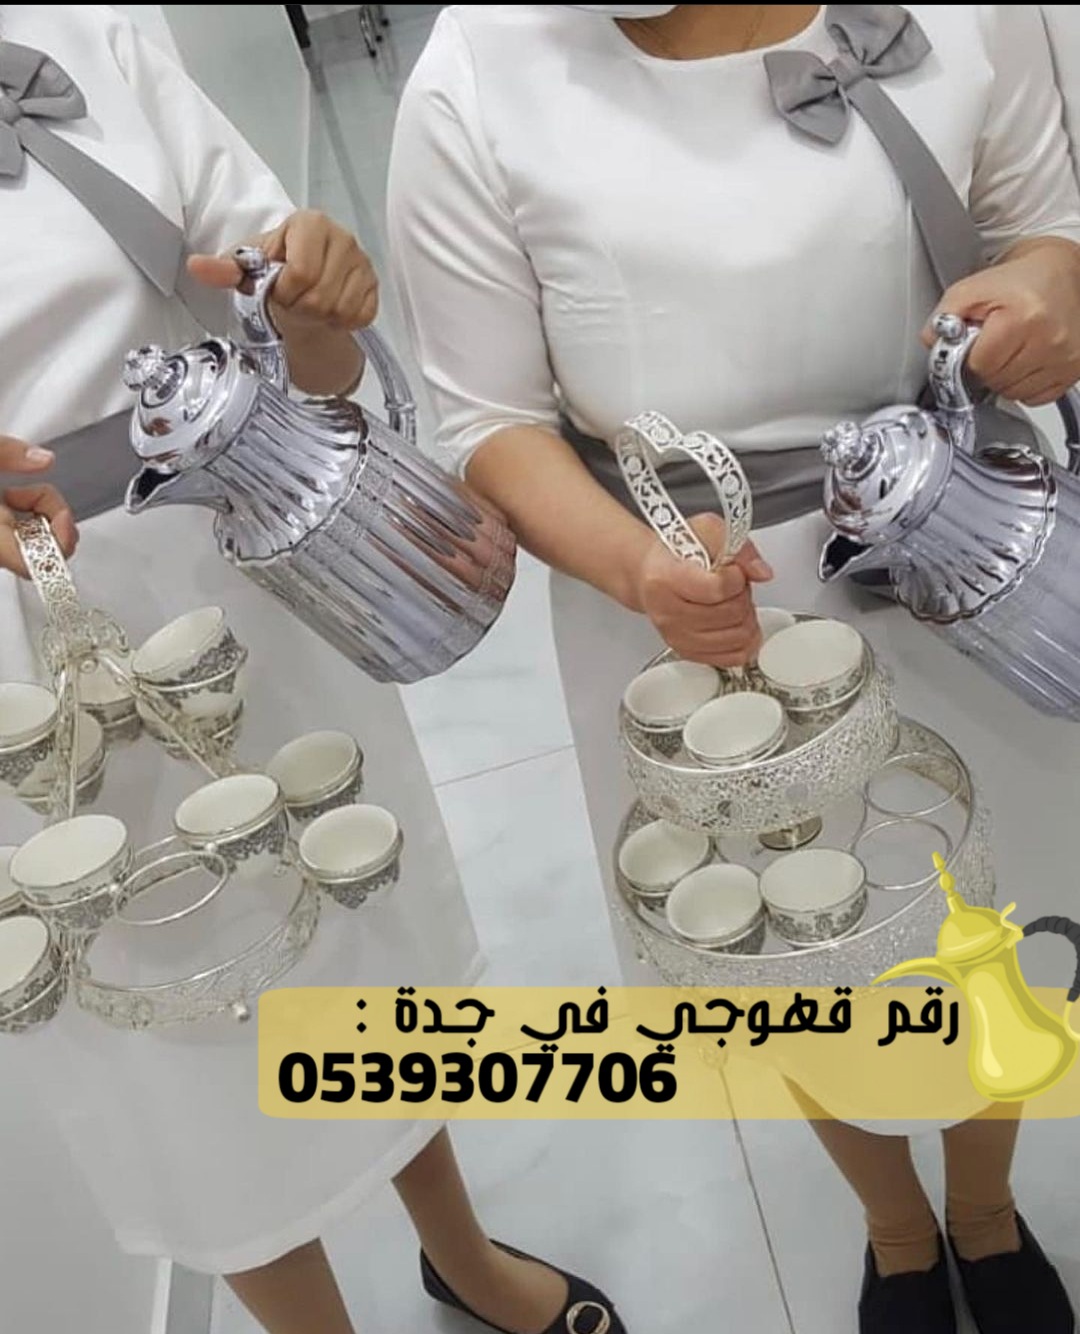 قهوجيين و مباشرين قهوة في جدة,0539307706